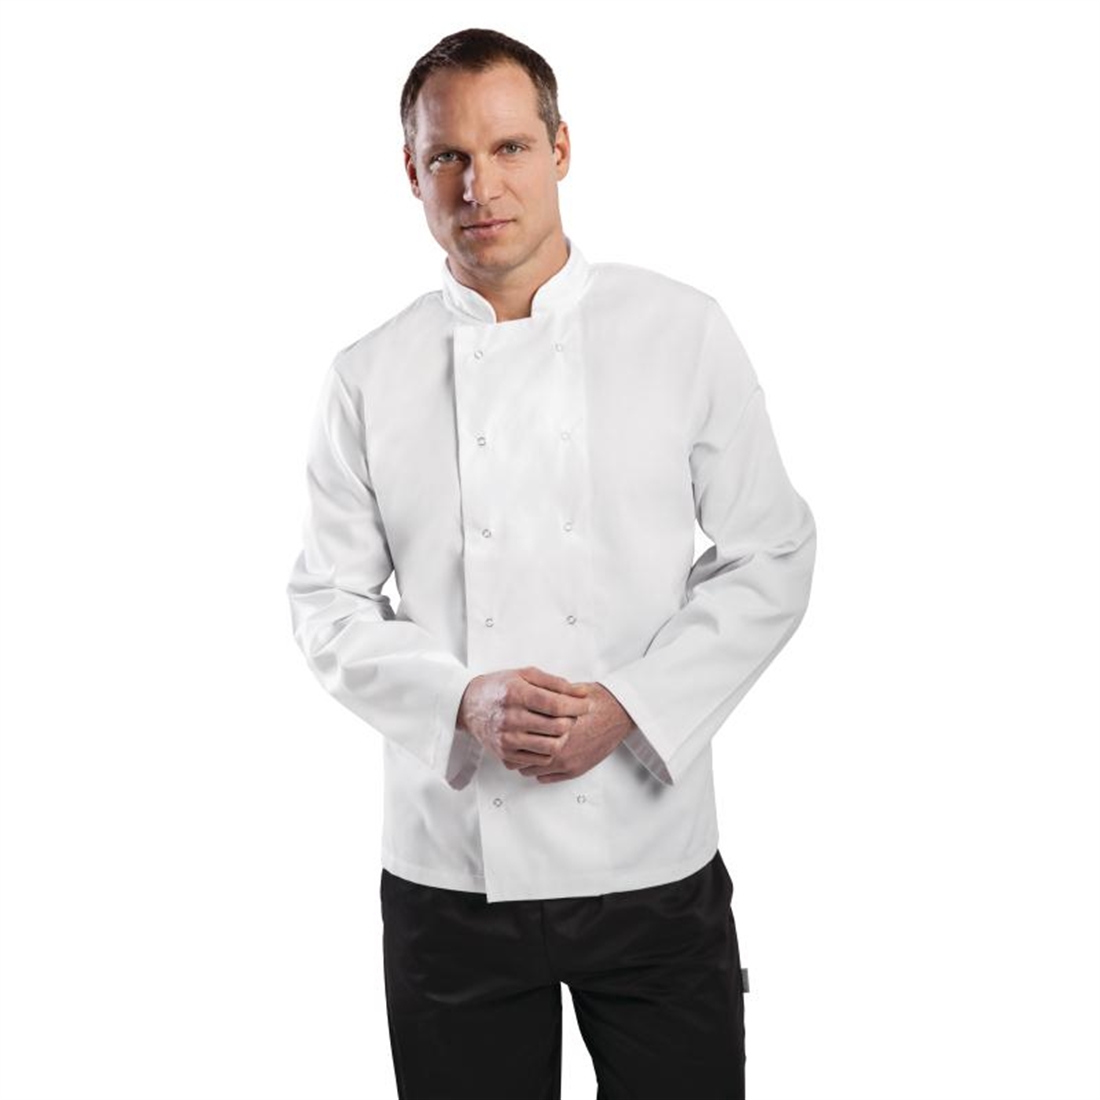 Whites Vegas Chef Jacket Long Sleeve White - S